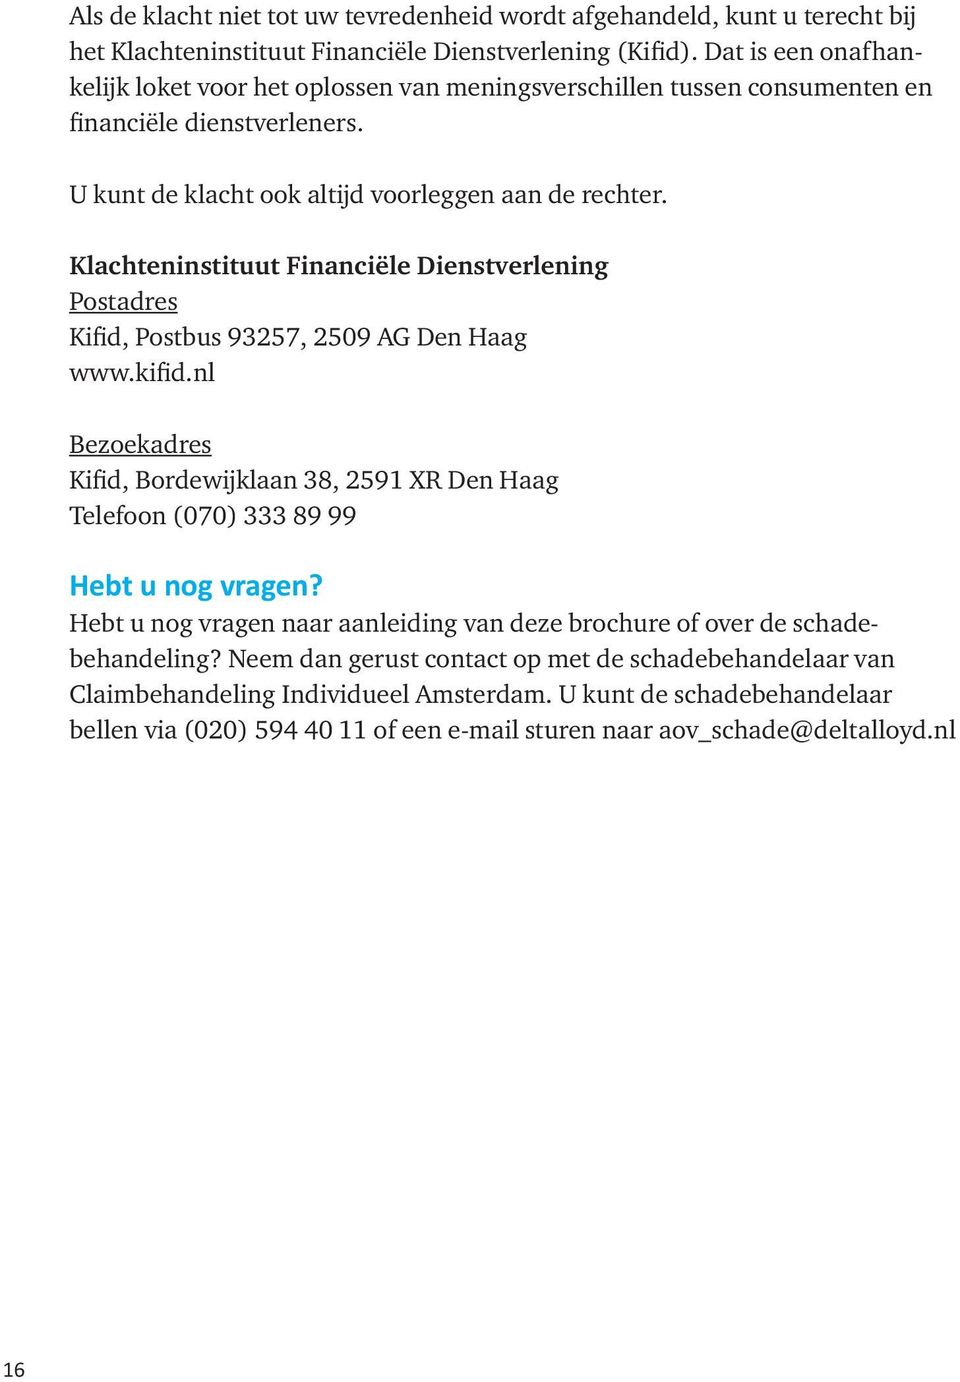 Klachteninstituut Financiële Dienstverlening Postadres Kifid, Postbus 93257, 2509 AG Den Haag www.kifid.